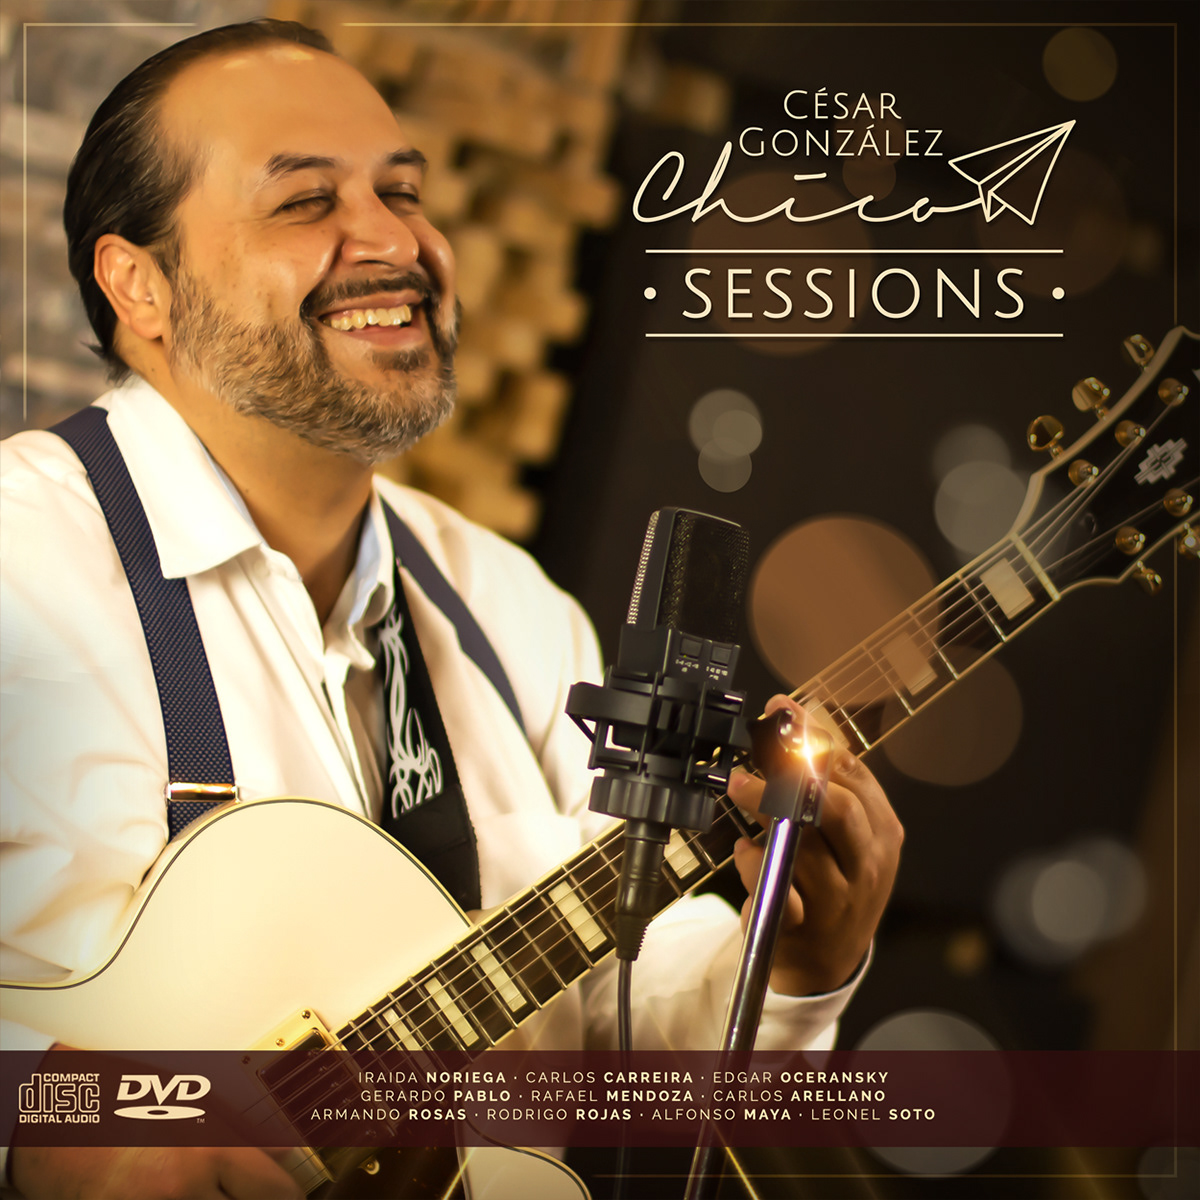 Chico sessions live sessions cesar gonzalez César Chico